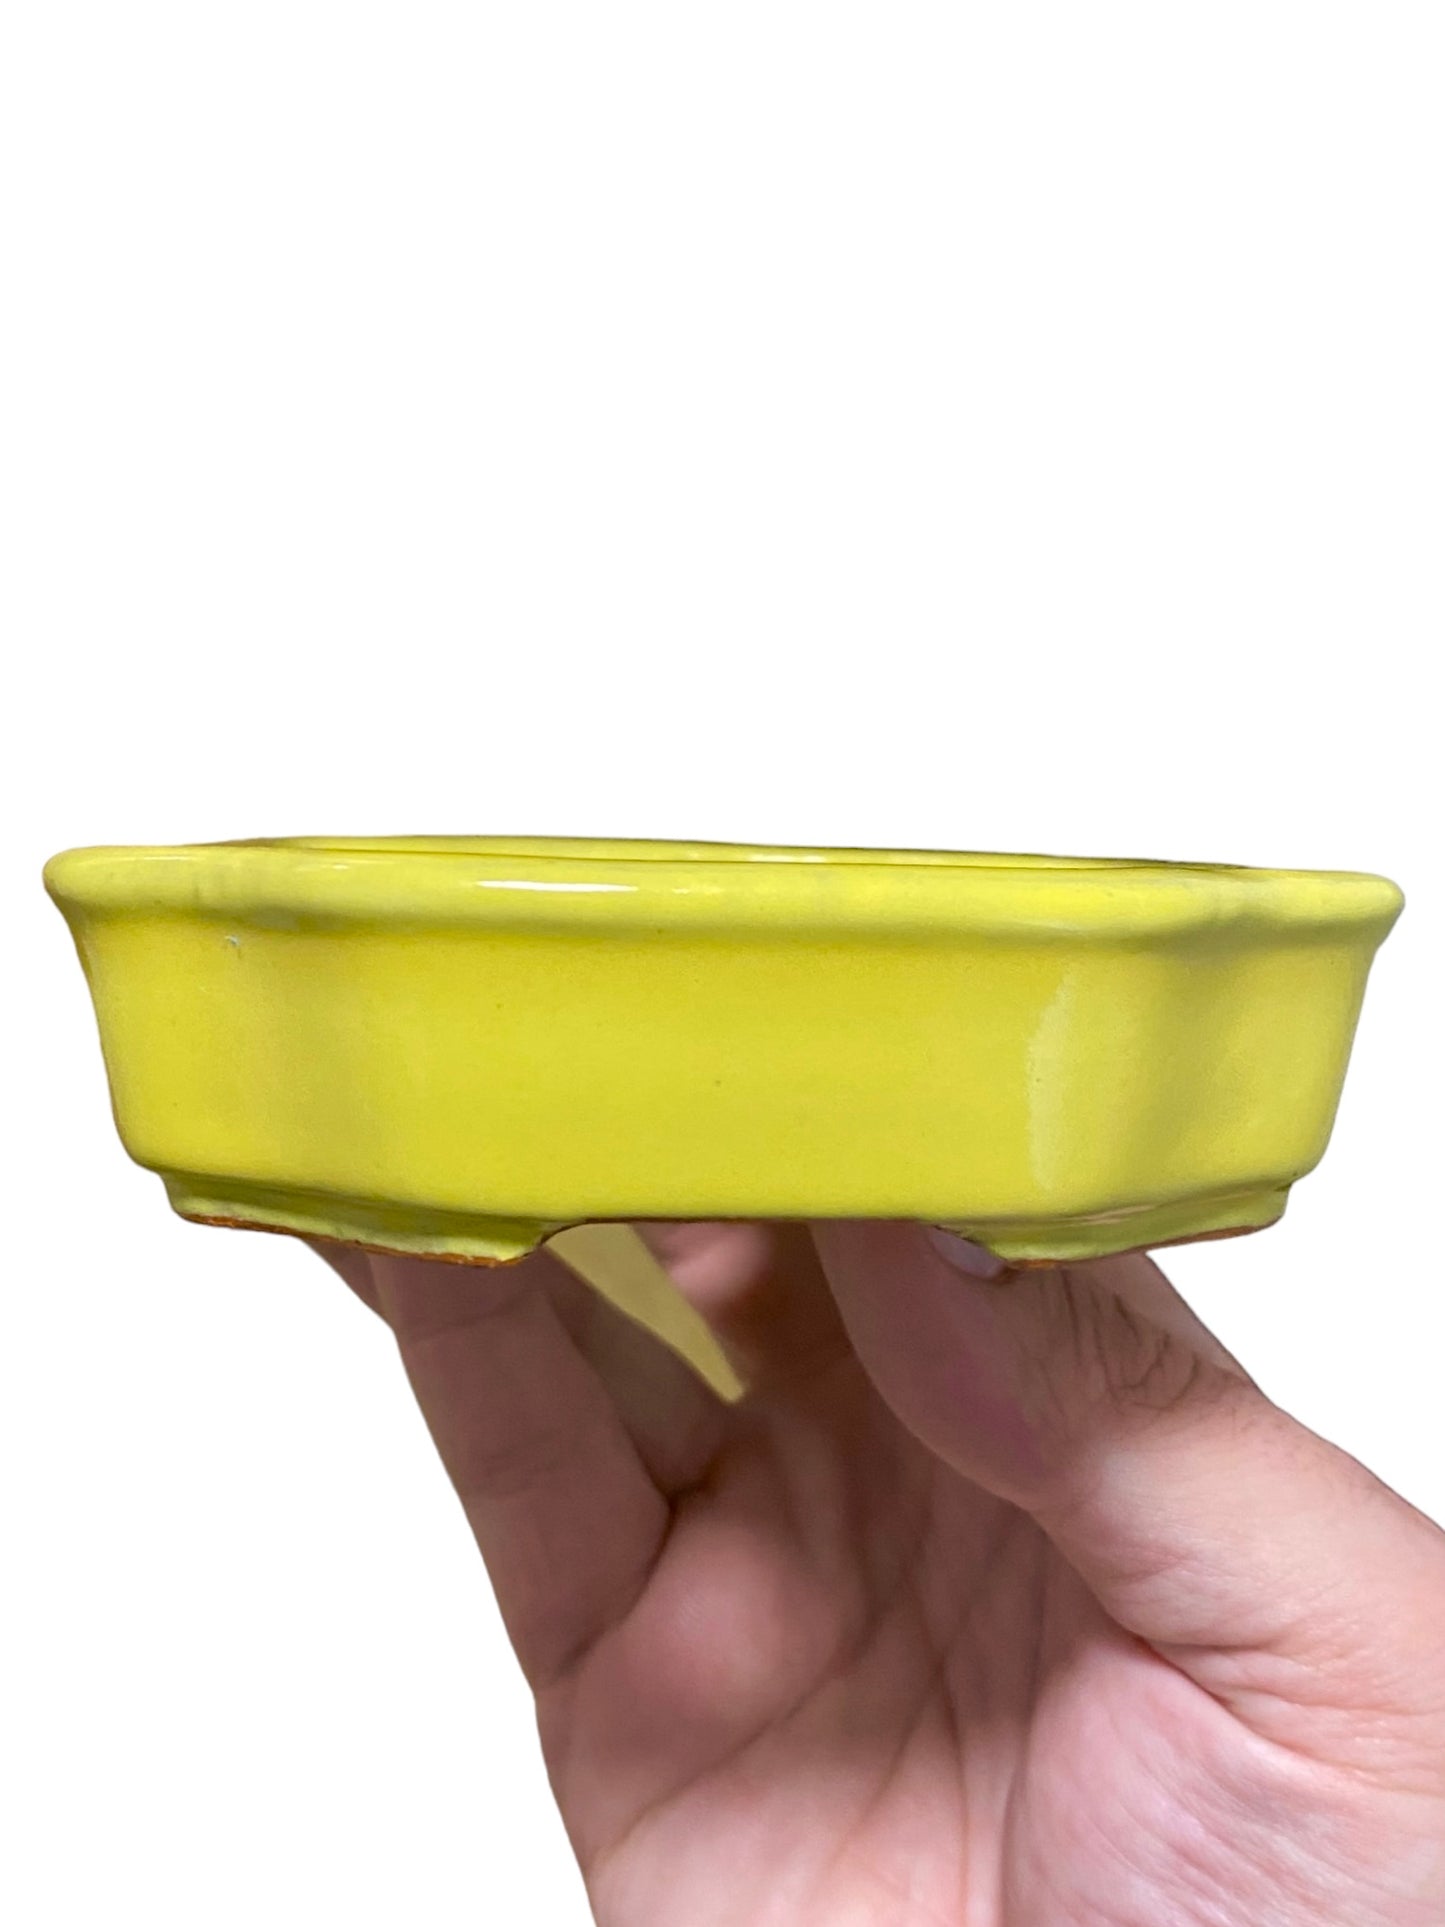 Ikko - Yellow Glazed Mokko Style Bonsai or Accent Pot